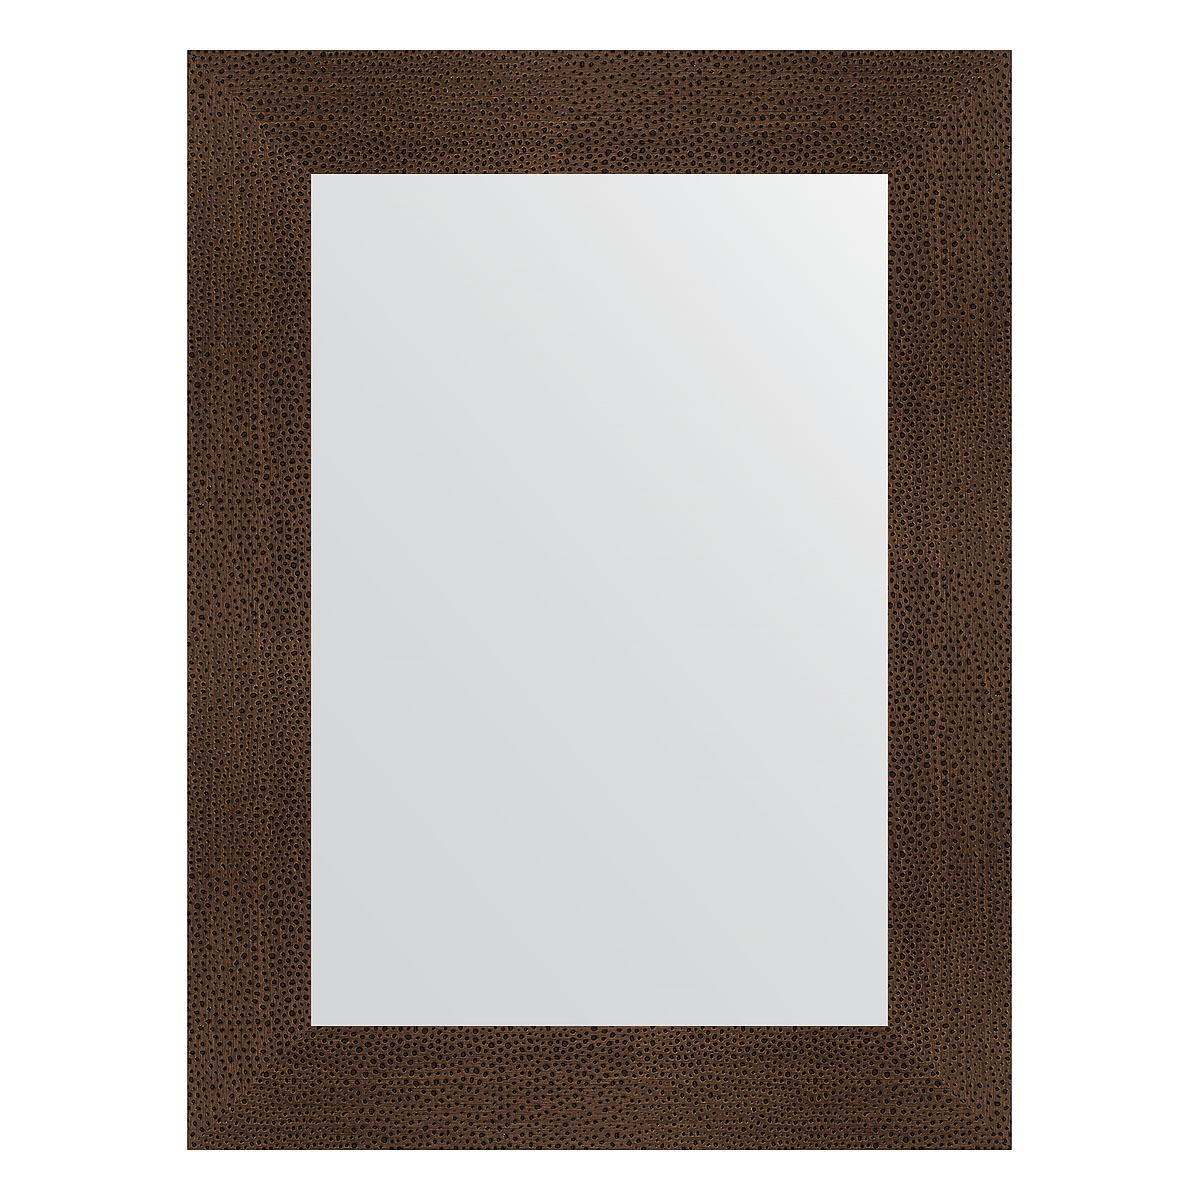 Зеркало в багетной раме Evoform бронзовая лава 90 мм 60х80 см зеркало в багетной раме evoform бронзовая лава 90 мм 56x76 см